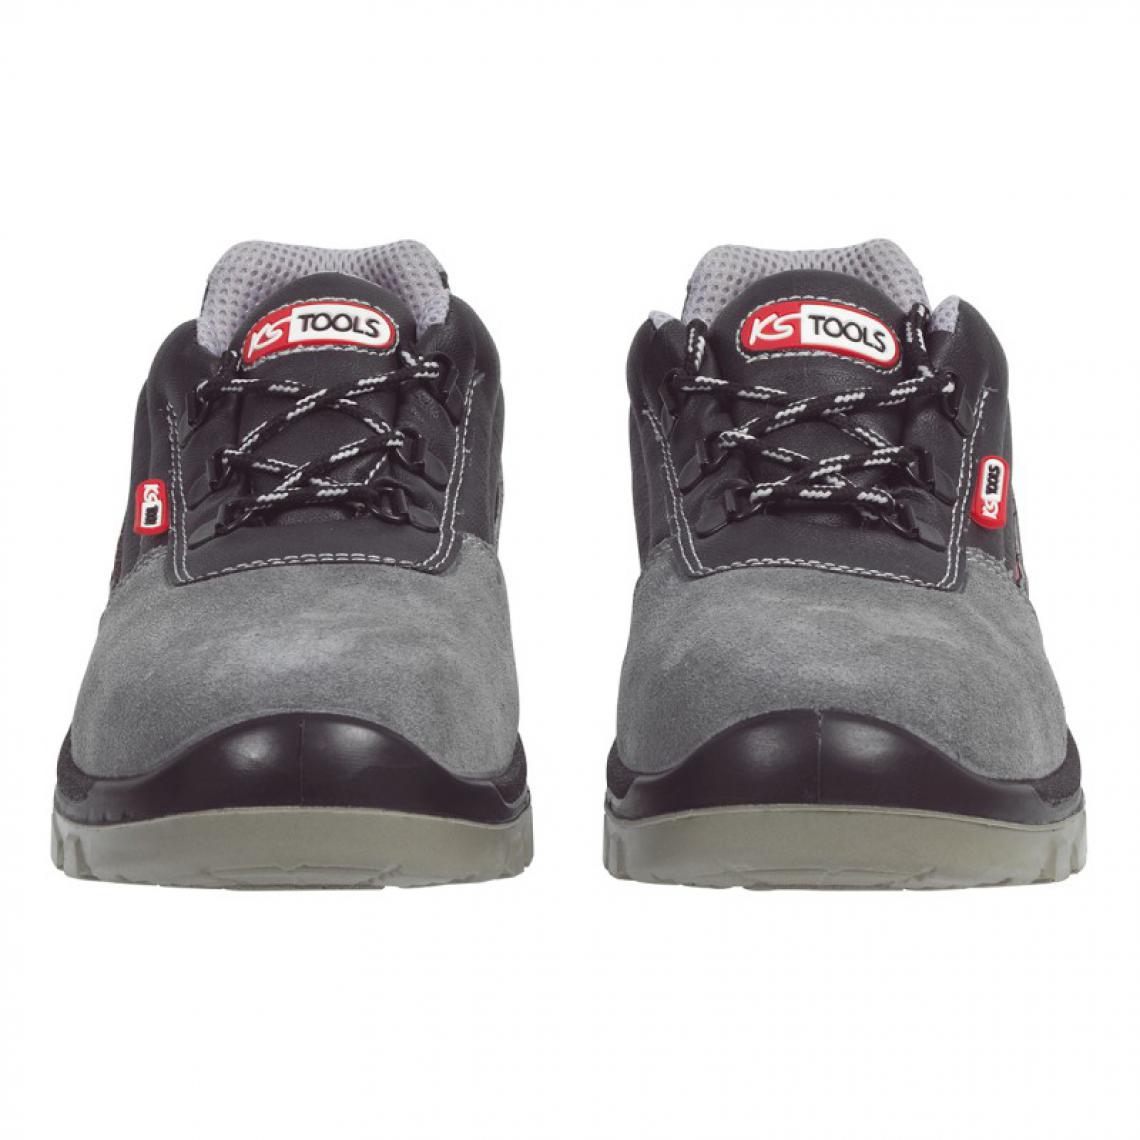 Kstools - Chaussures de sécurité KSTOOLS Couleur grise taille 43 - Equipement de Protection Individuelle